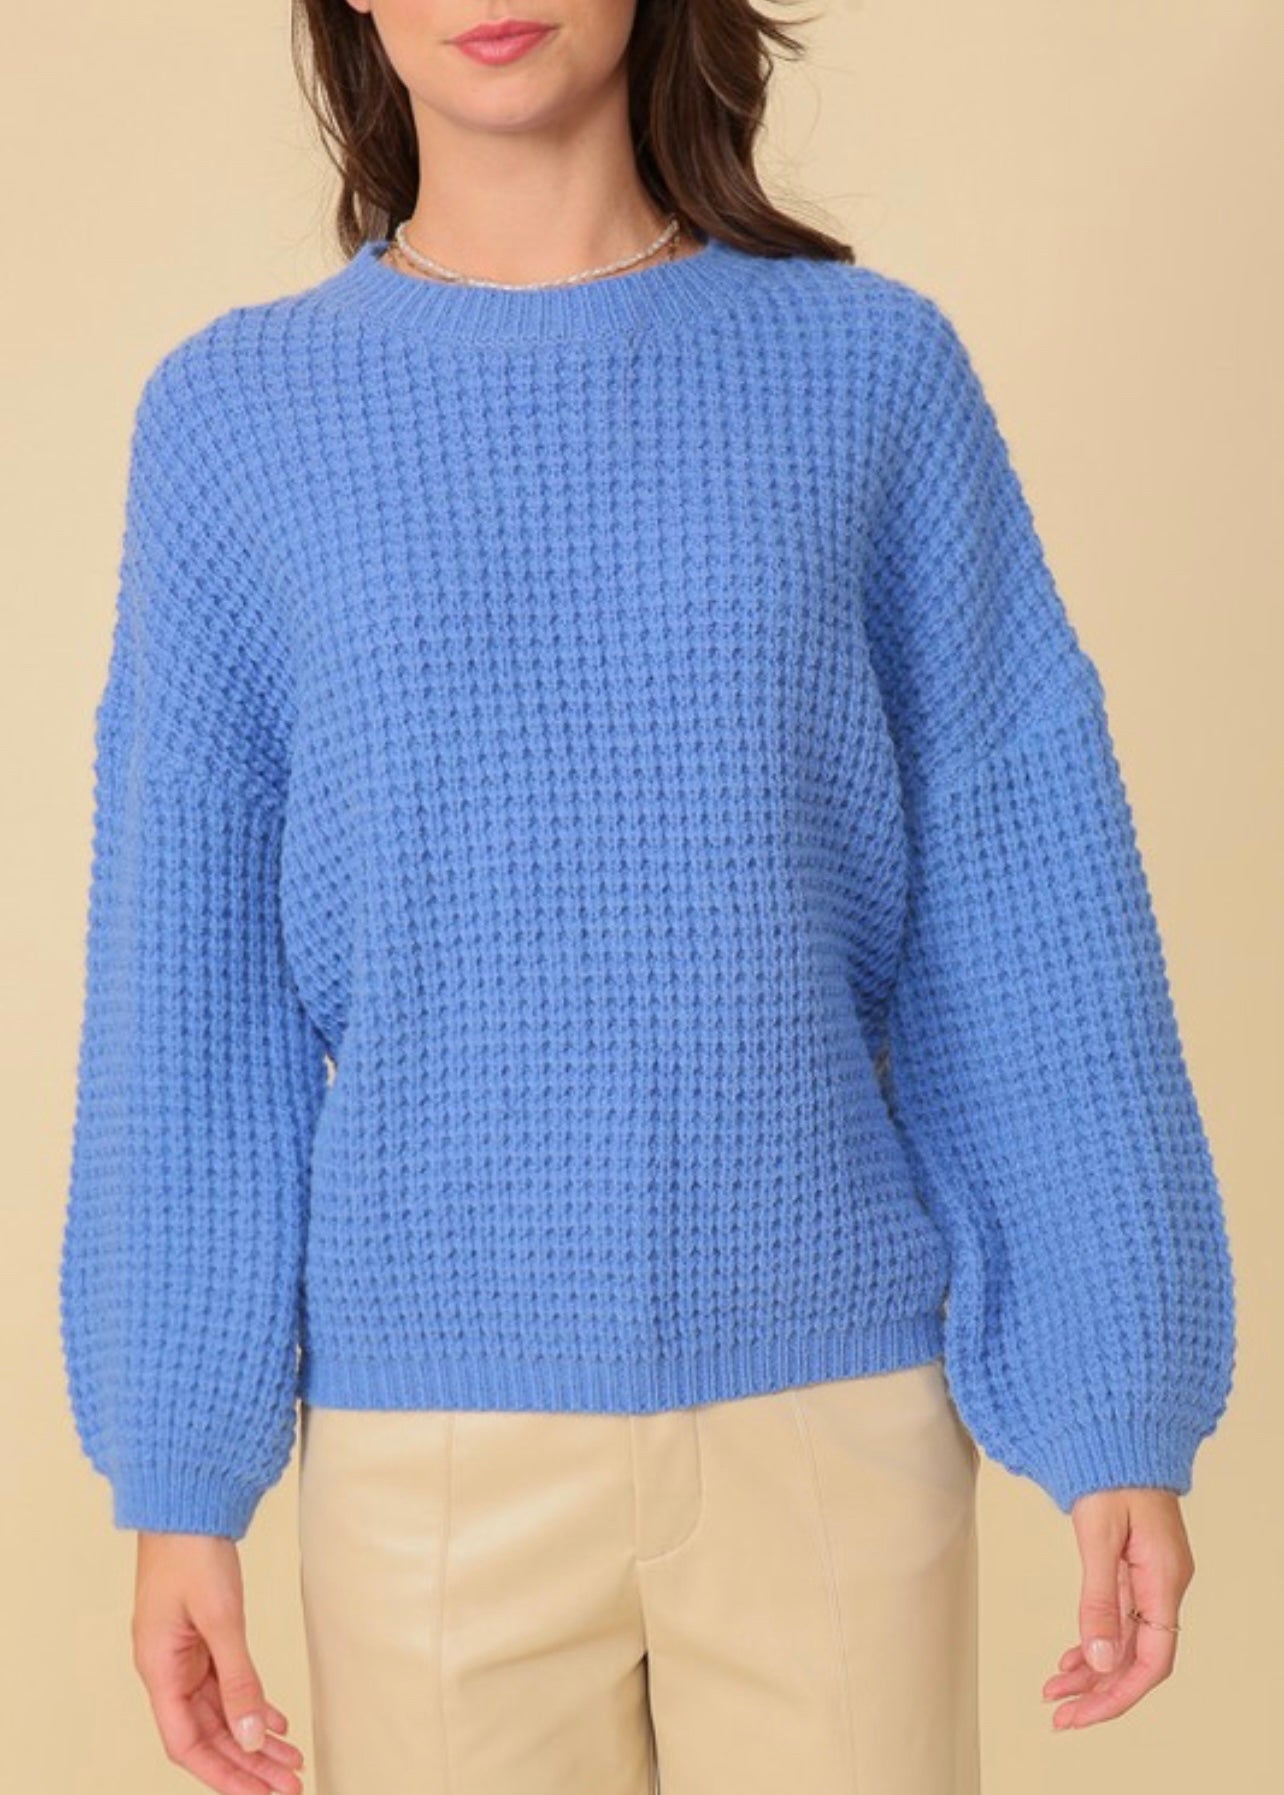 Blue Waffle Knit Sweater